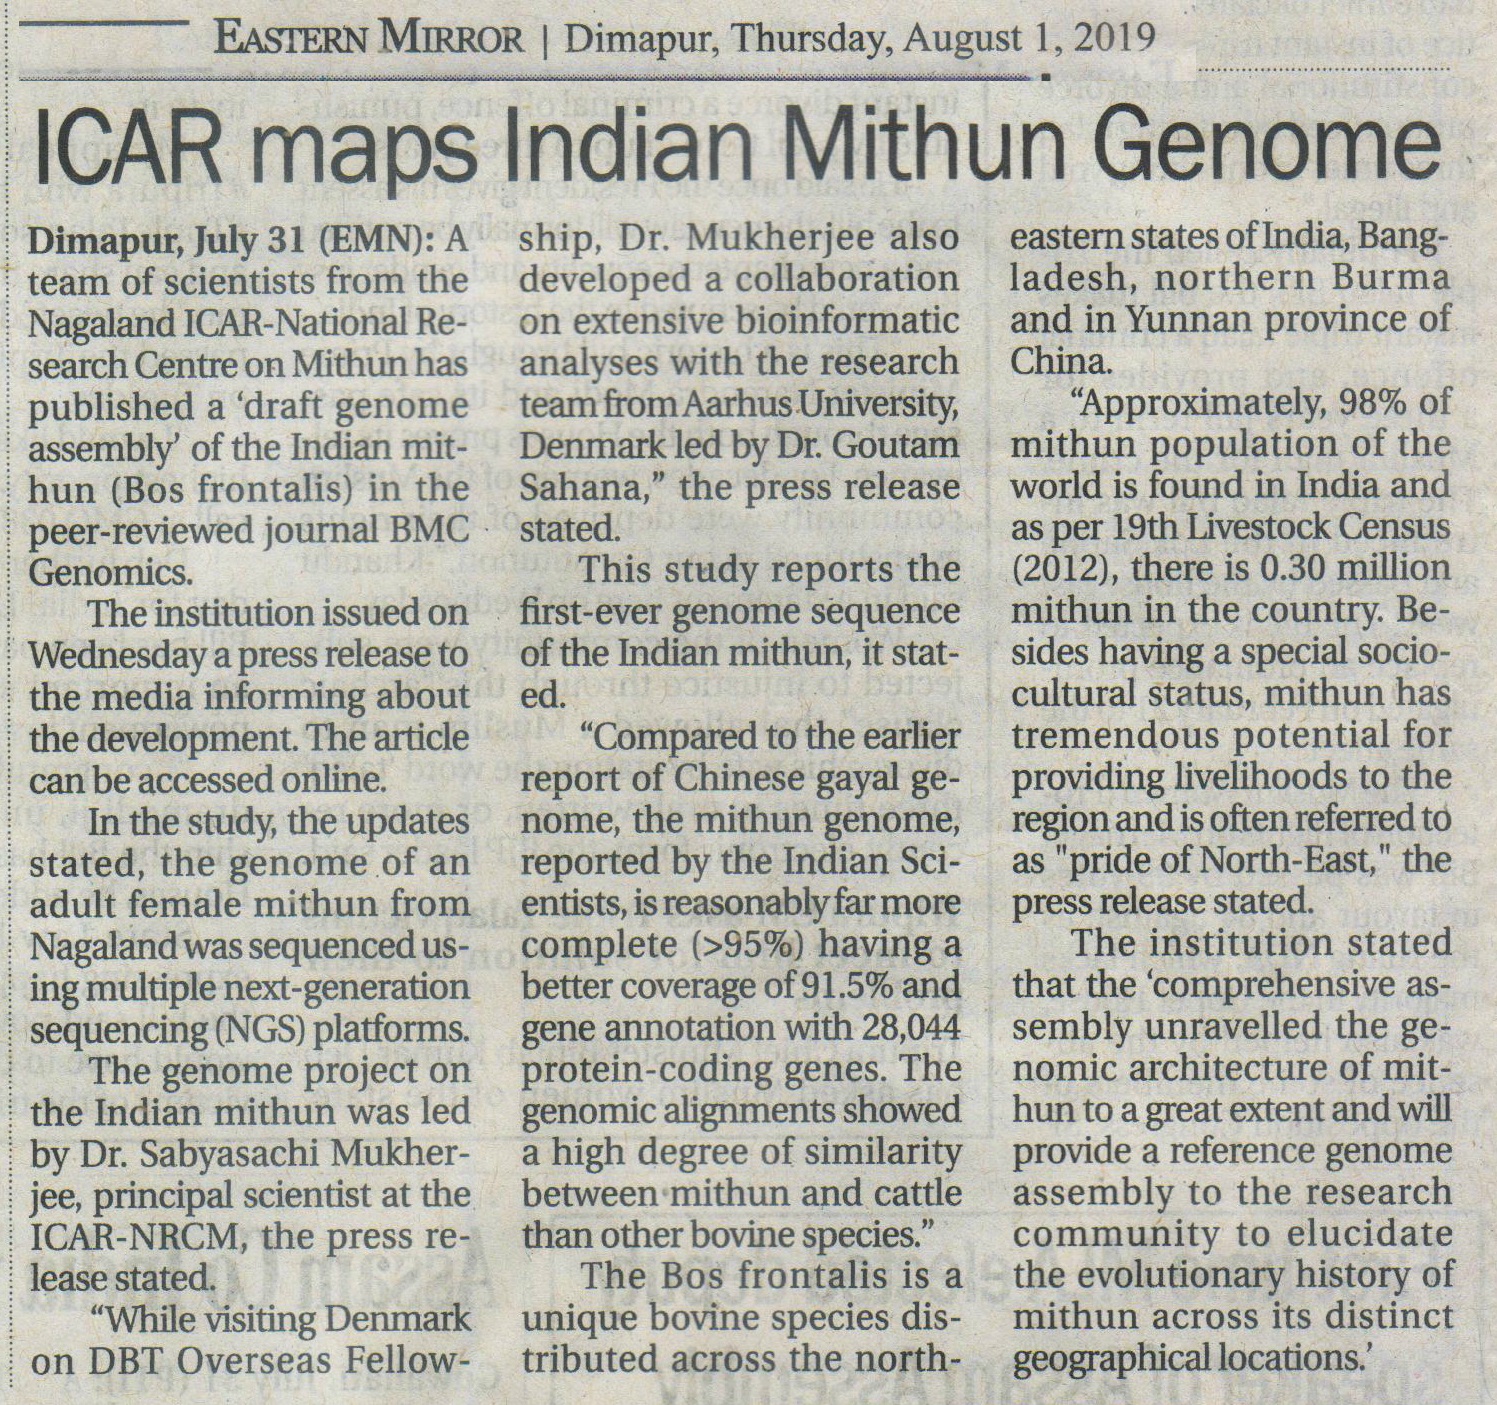 ICAR maps India Mithun Genome